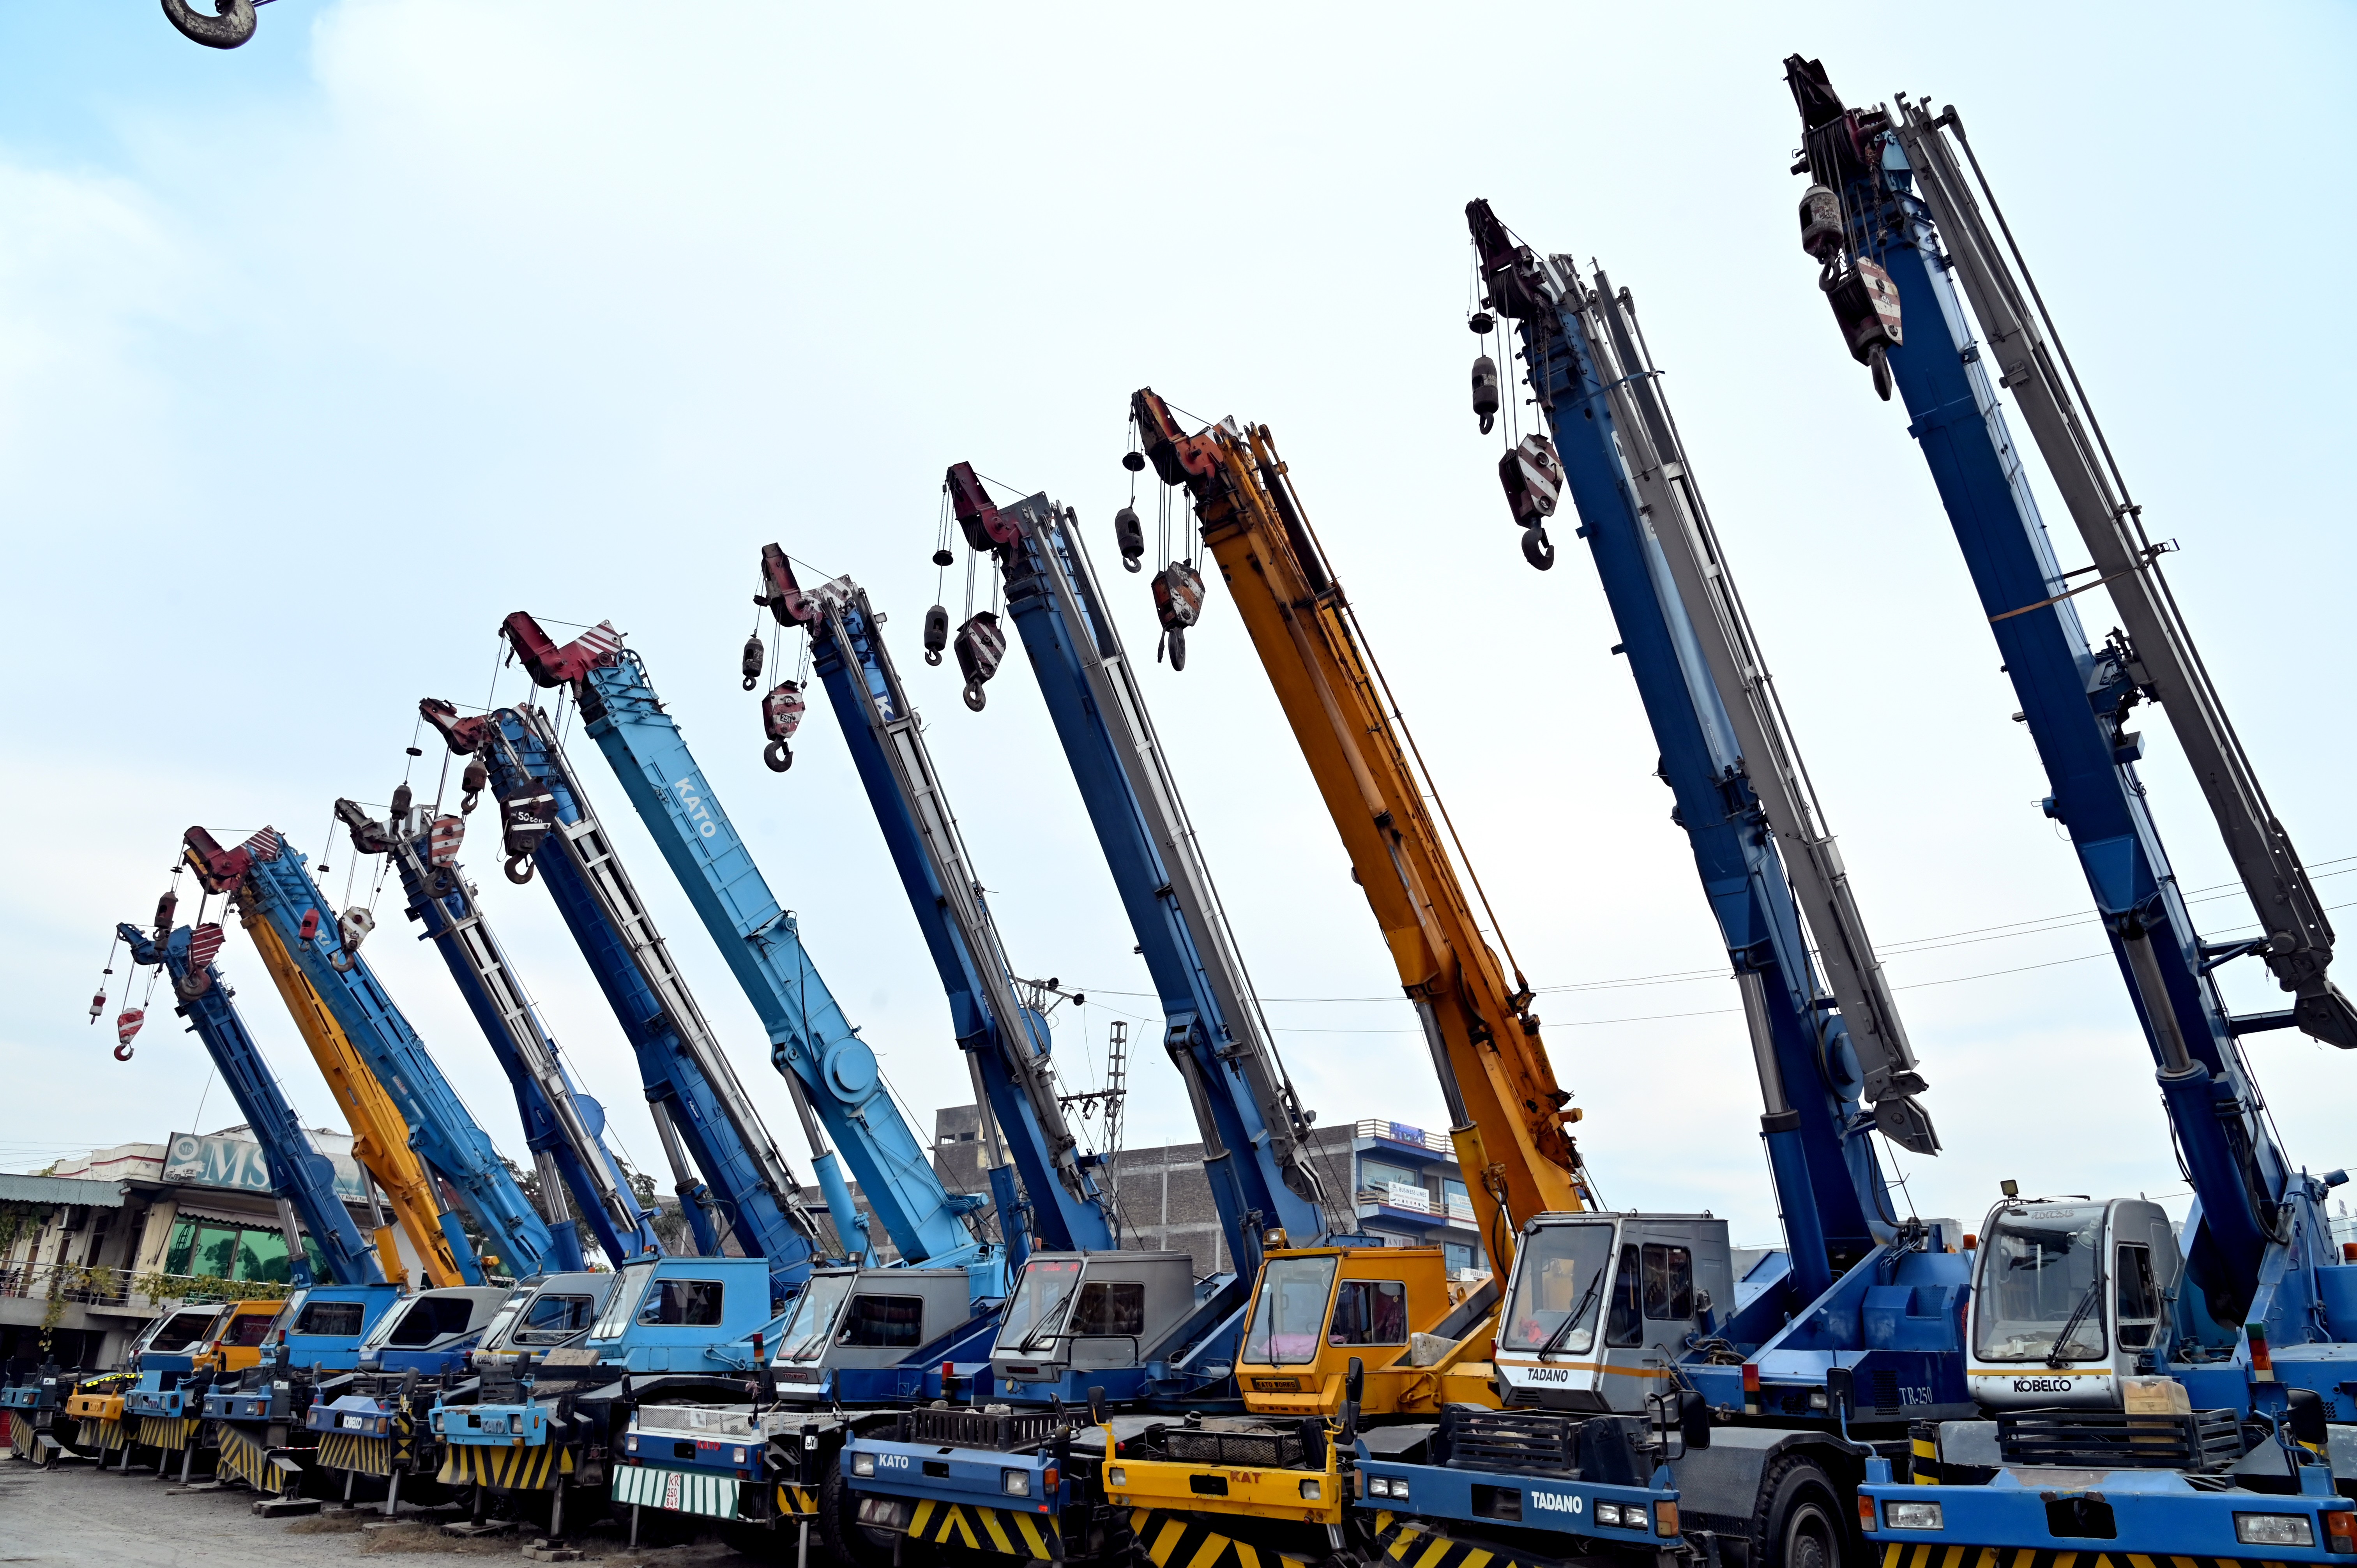 Customized heavy duty cranes of Hyundai